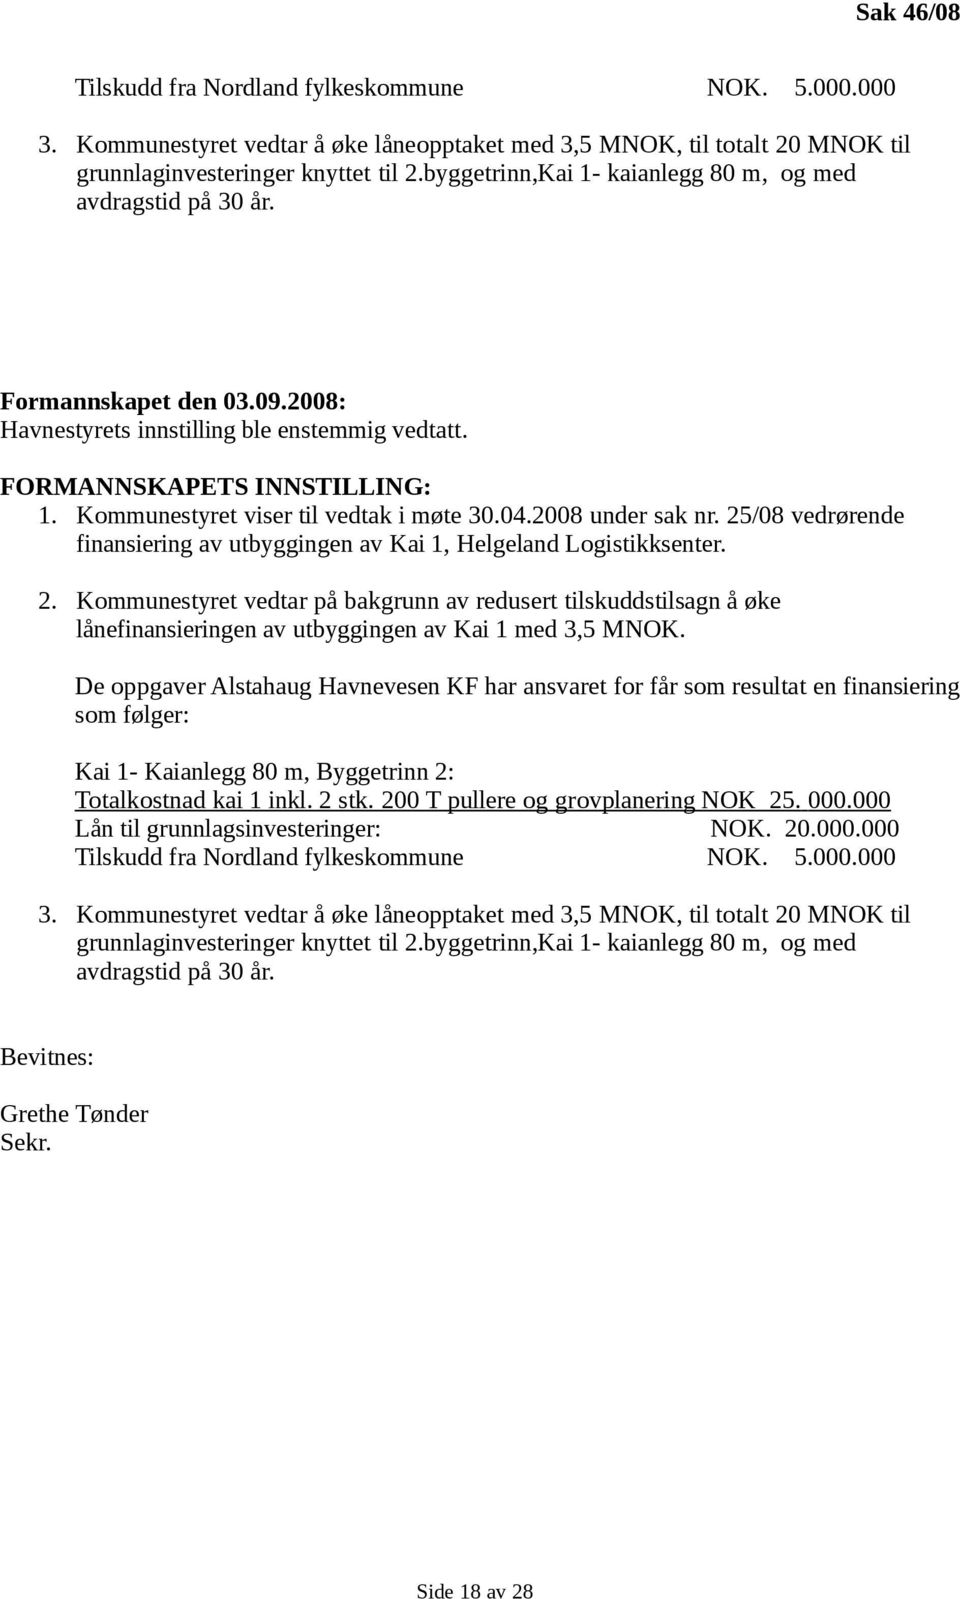 Kommunestyret viser til vedtak i møte 30.04.2008 under sak nr. 25/08 vedrørende finansiering av utbyggingen av Kai 1, Helgeland Logistikksenter. 2. Kommunestyret vedtar på bakgrunn av redusert tilskuddstilsagn å øke lånefinansieringen av utbyggingen av Kai 1 med 3,5 MNOK.